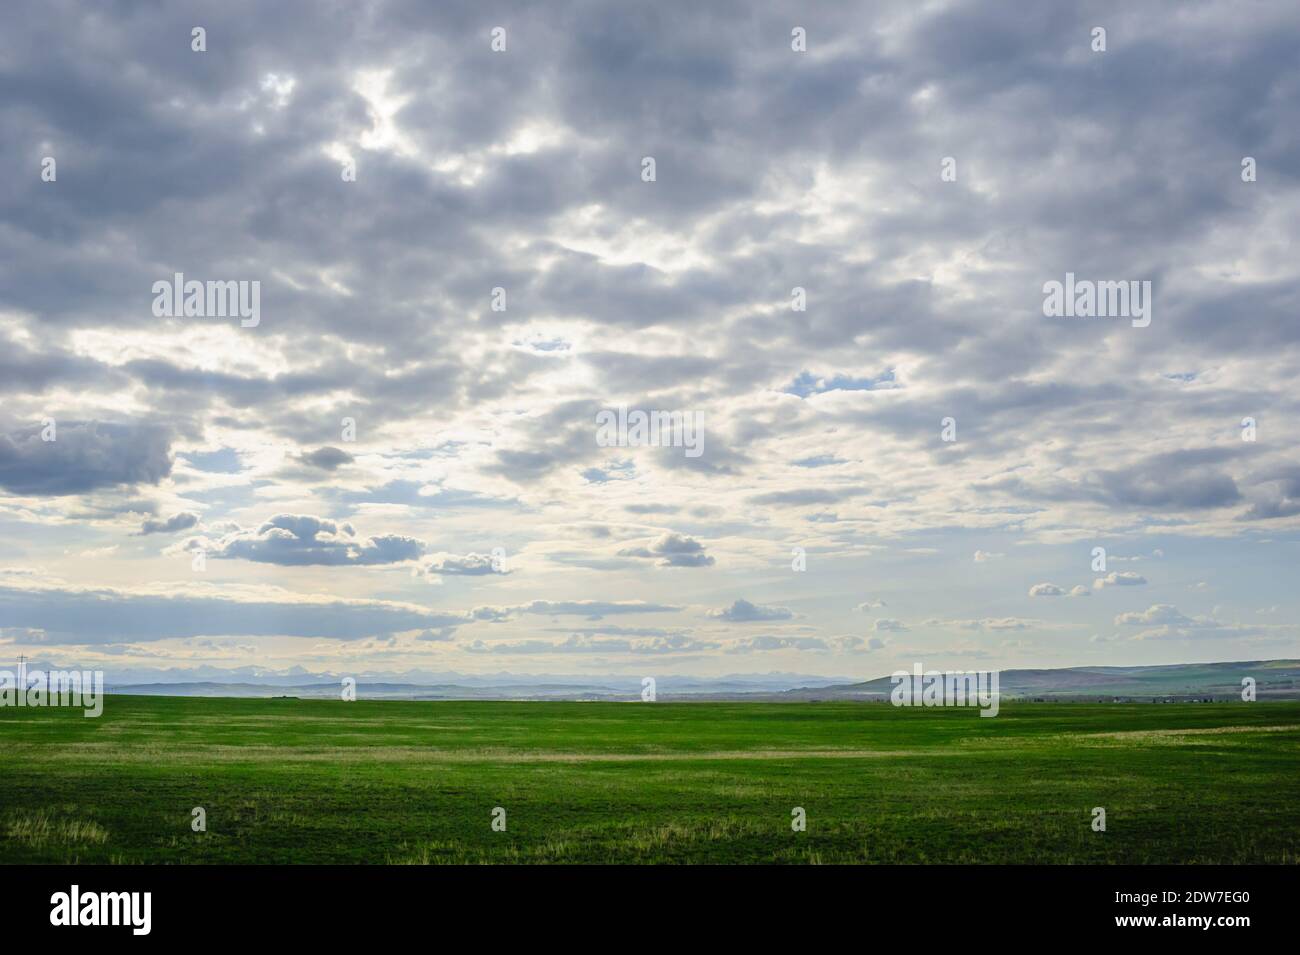 Paesaggio Prairie con montagne in lontananza sotto le nuvole basse, in Alberta, Canada. Foto Stock